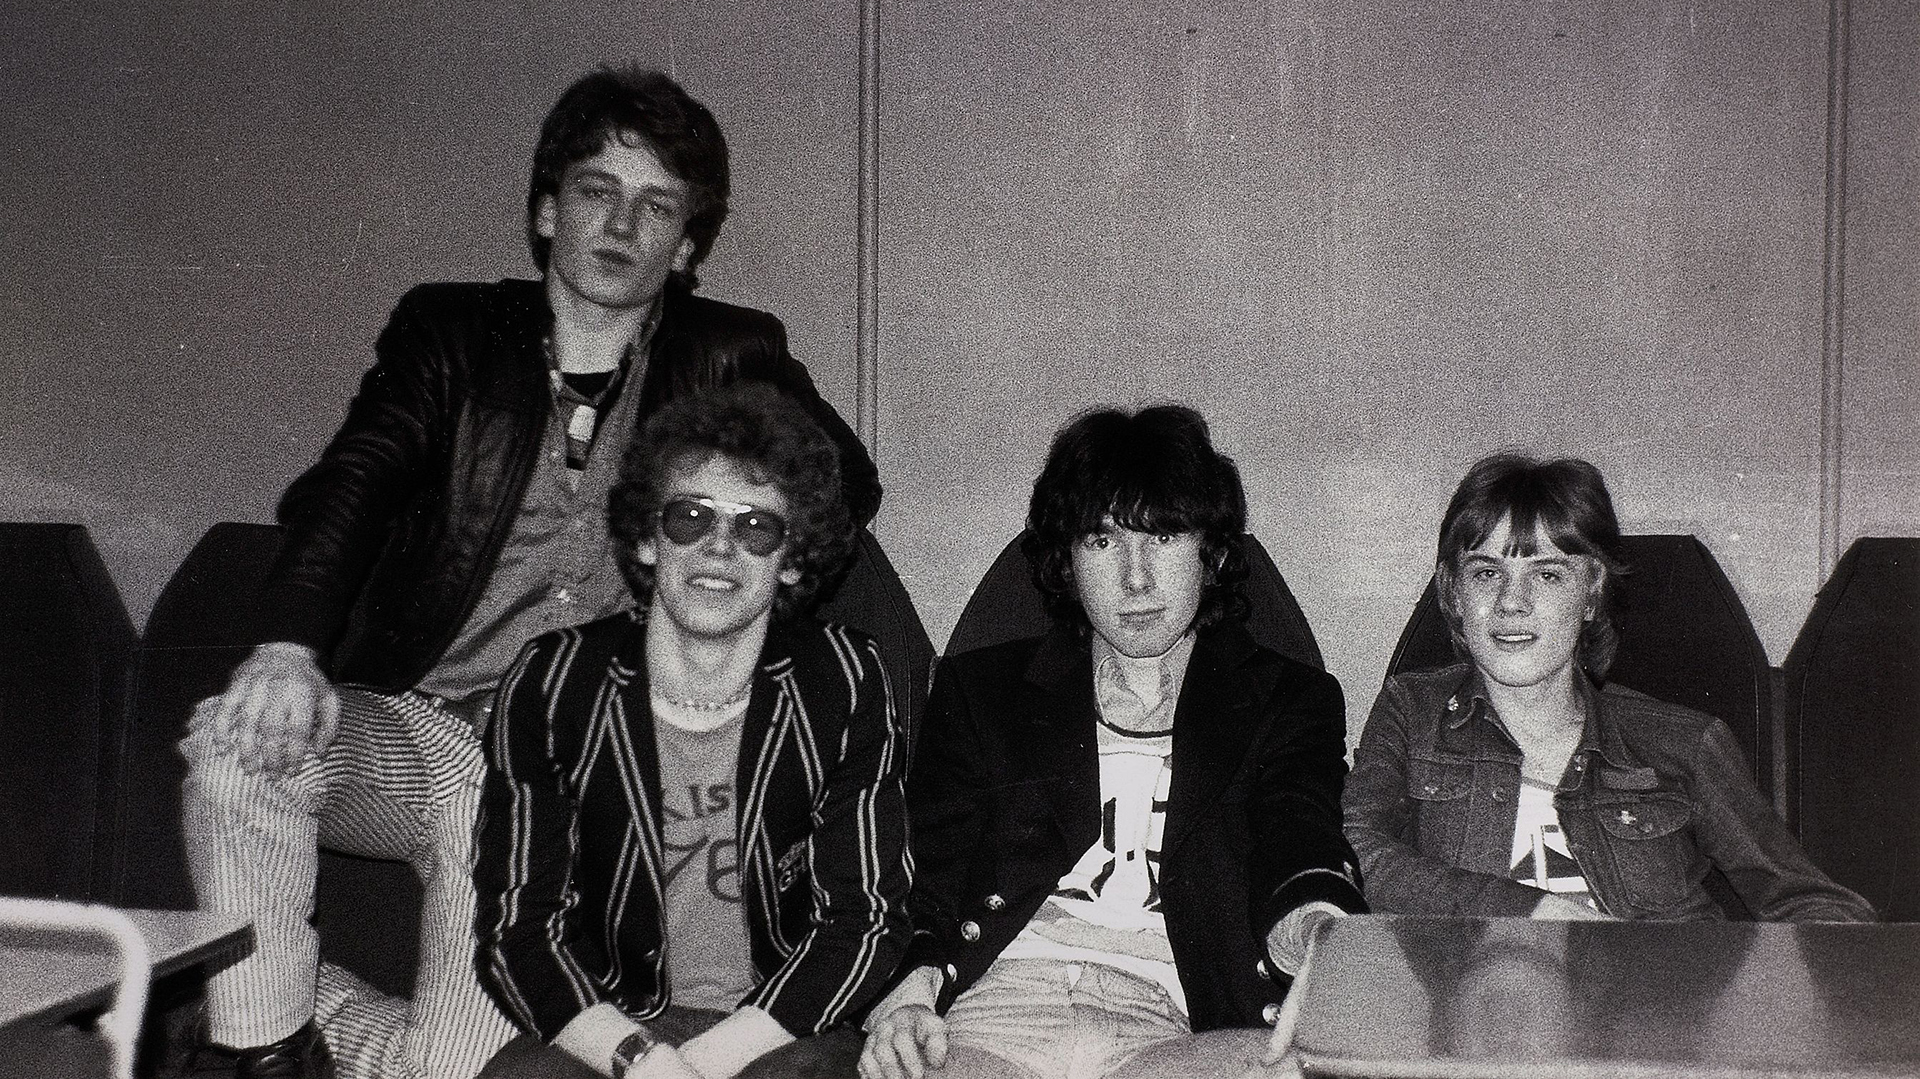 U2 en 1978, cuando todavía no habían publicado siquiera su primer disco, "Boy"